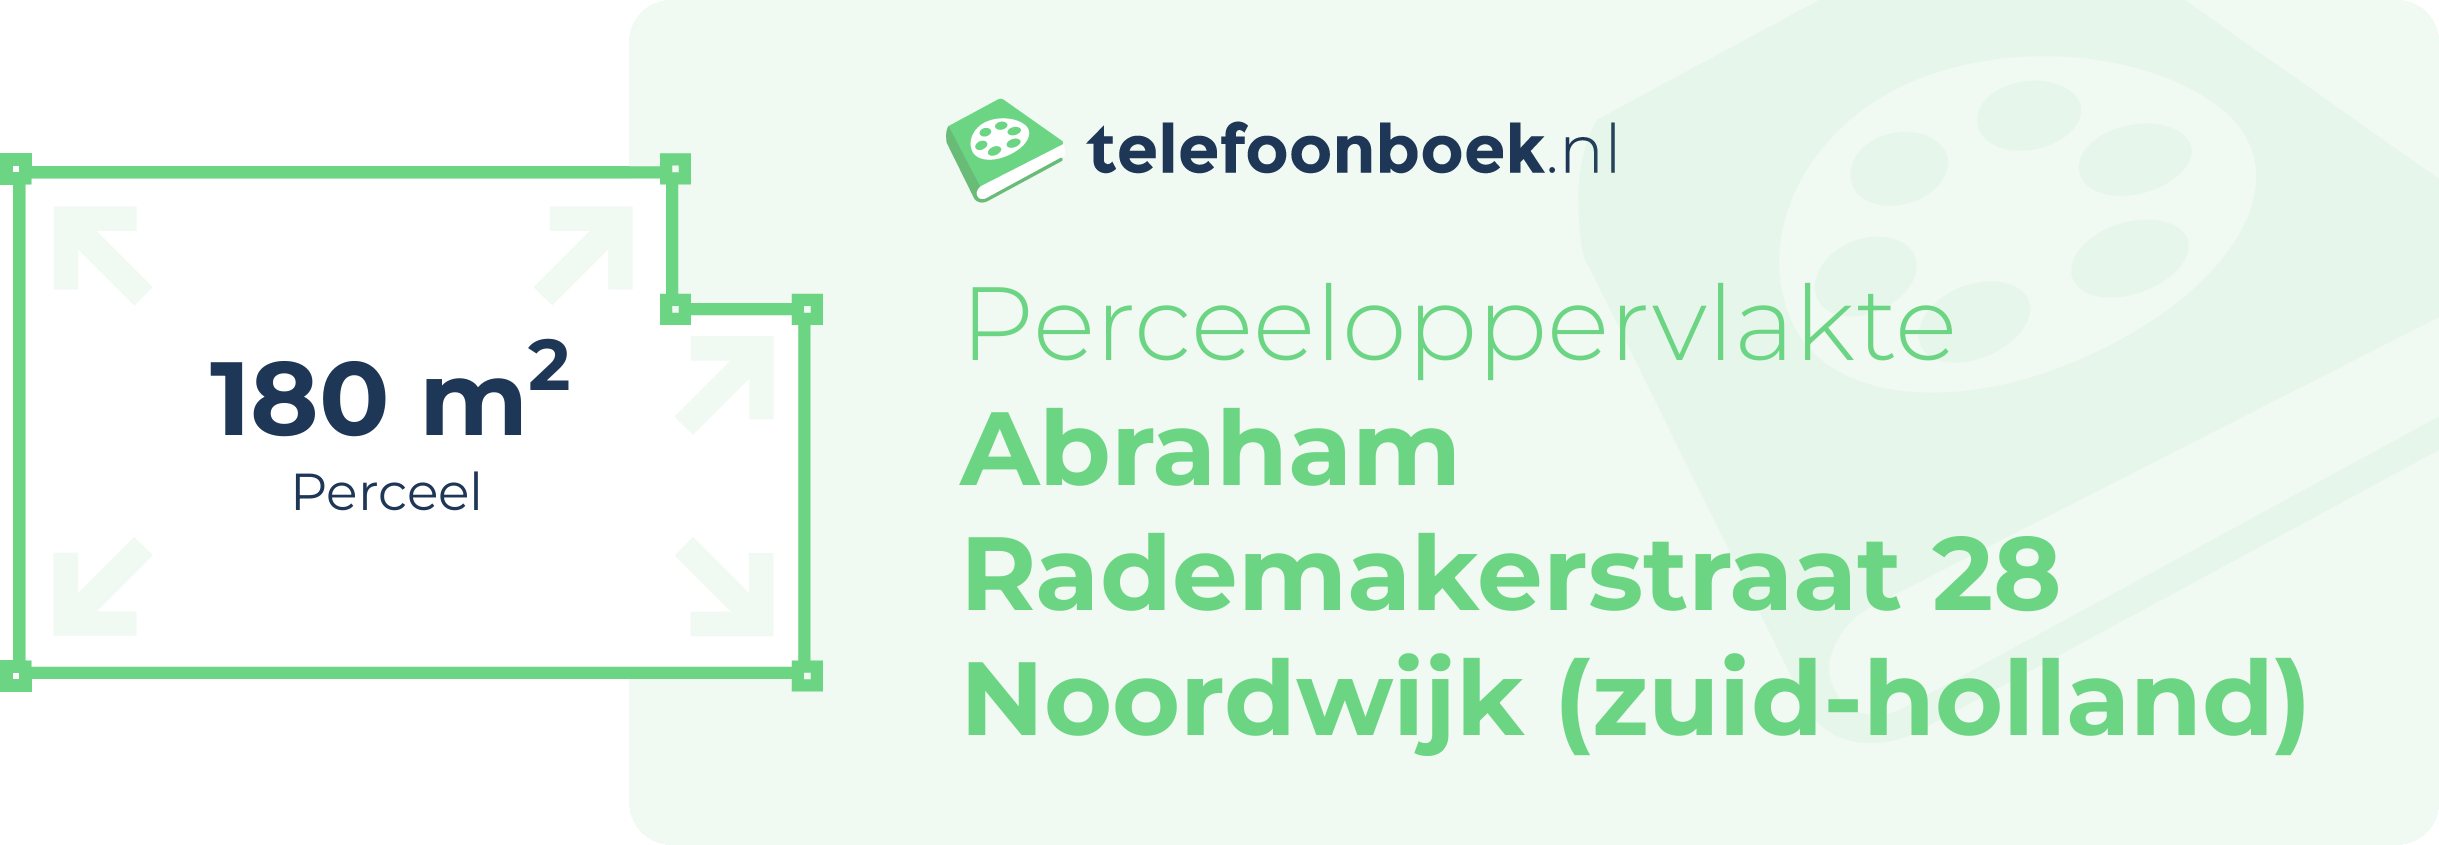 Perceeloppervlakte Abraham Rademakerstraat 28 Noordwijk (Zuid-Holland)